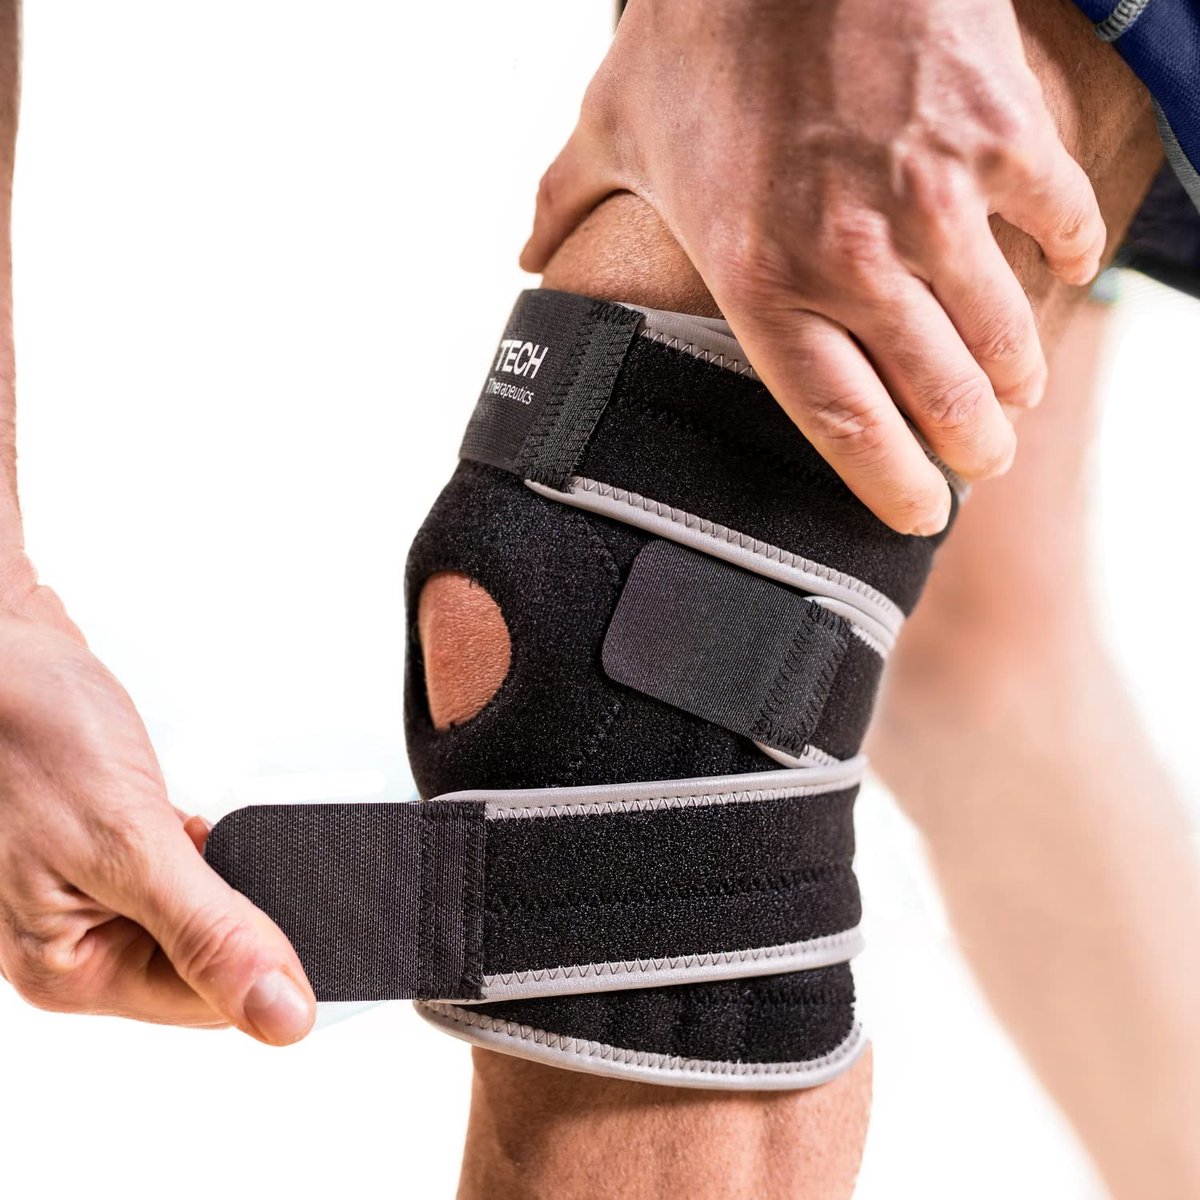 Kniesteun Orthopedische kniebrace voor intensief sporten, ondersteuning, stabilisatie en versterking van uw knieën, medische kwaliteit, kniebracebandage voor knie